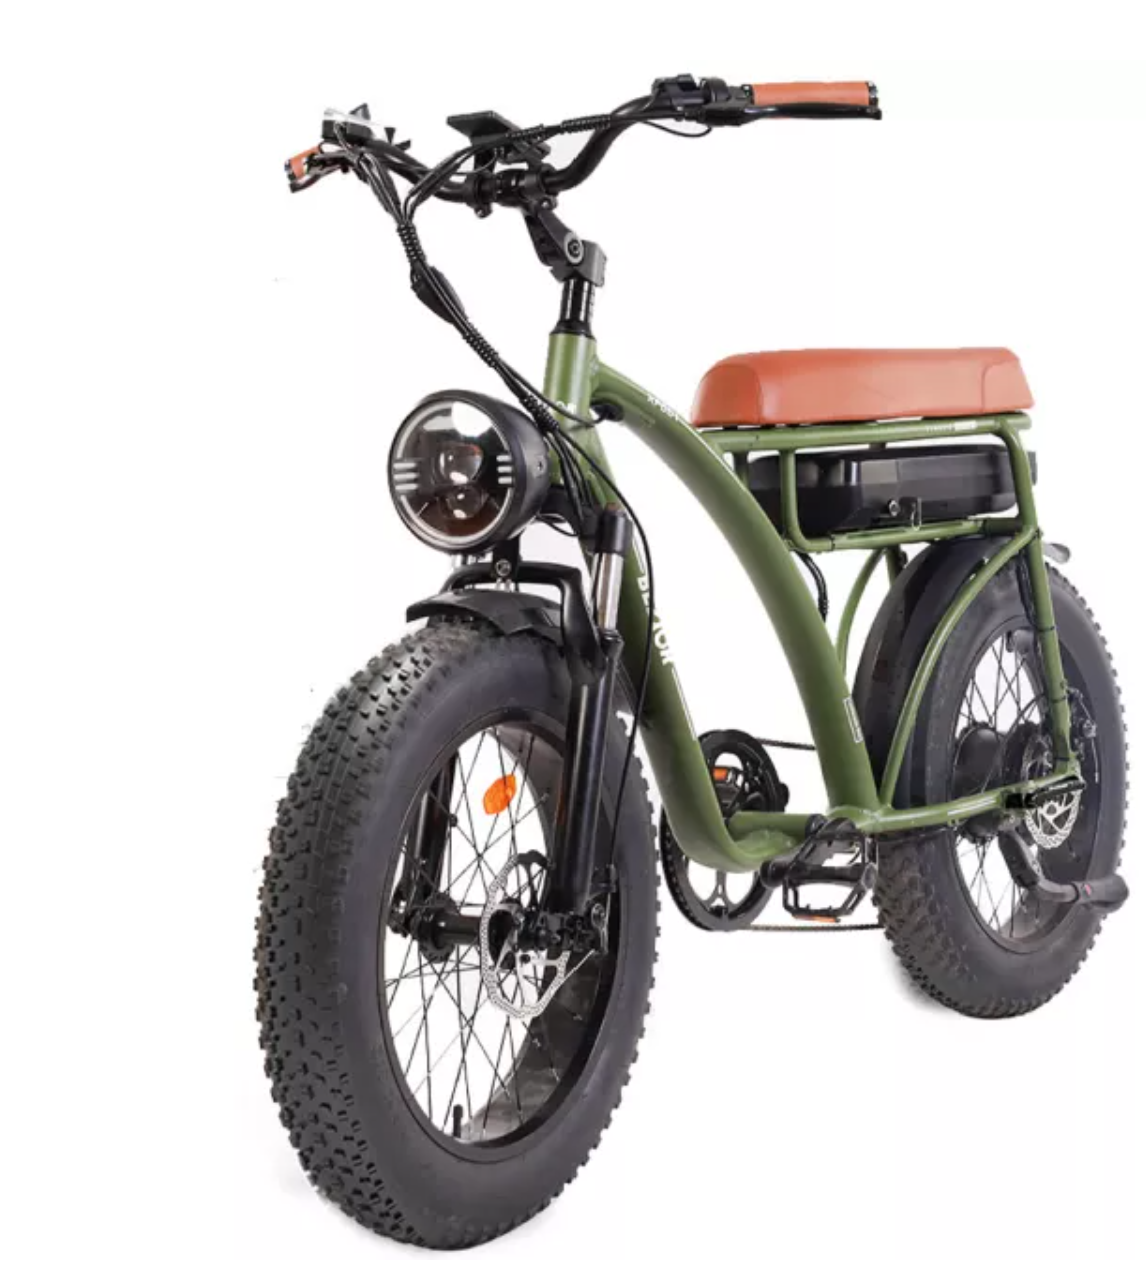 Bezior XF001 Plus Electric Bike Retro City Bike 1000W Motor 60km Range